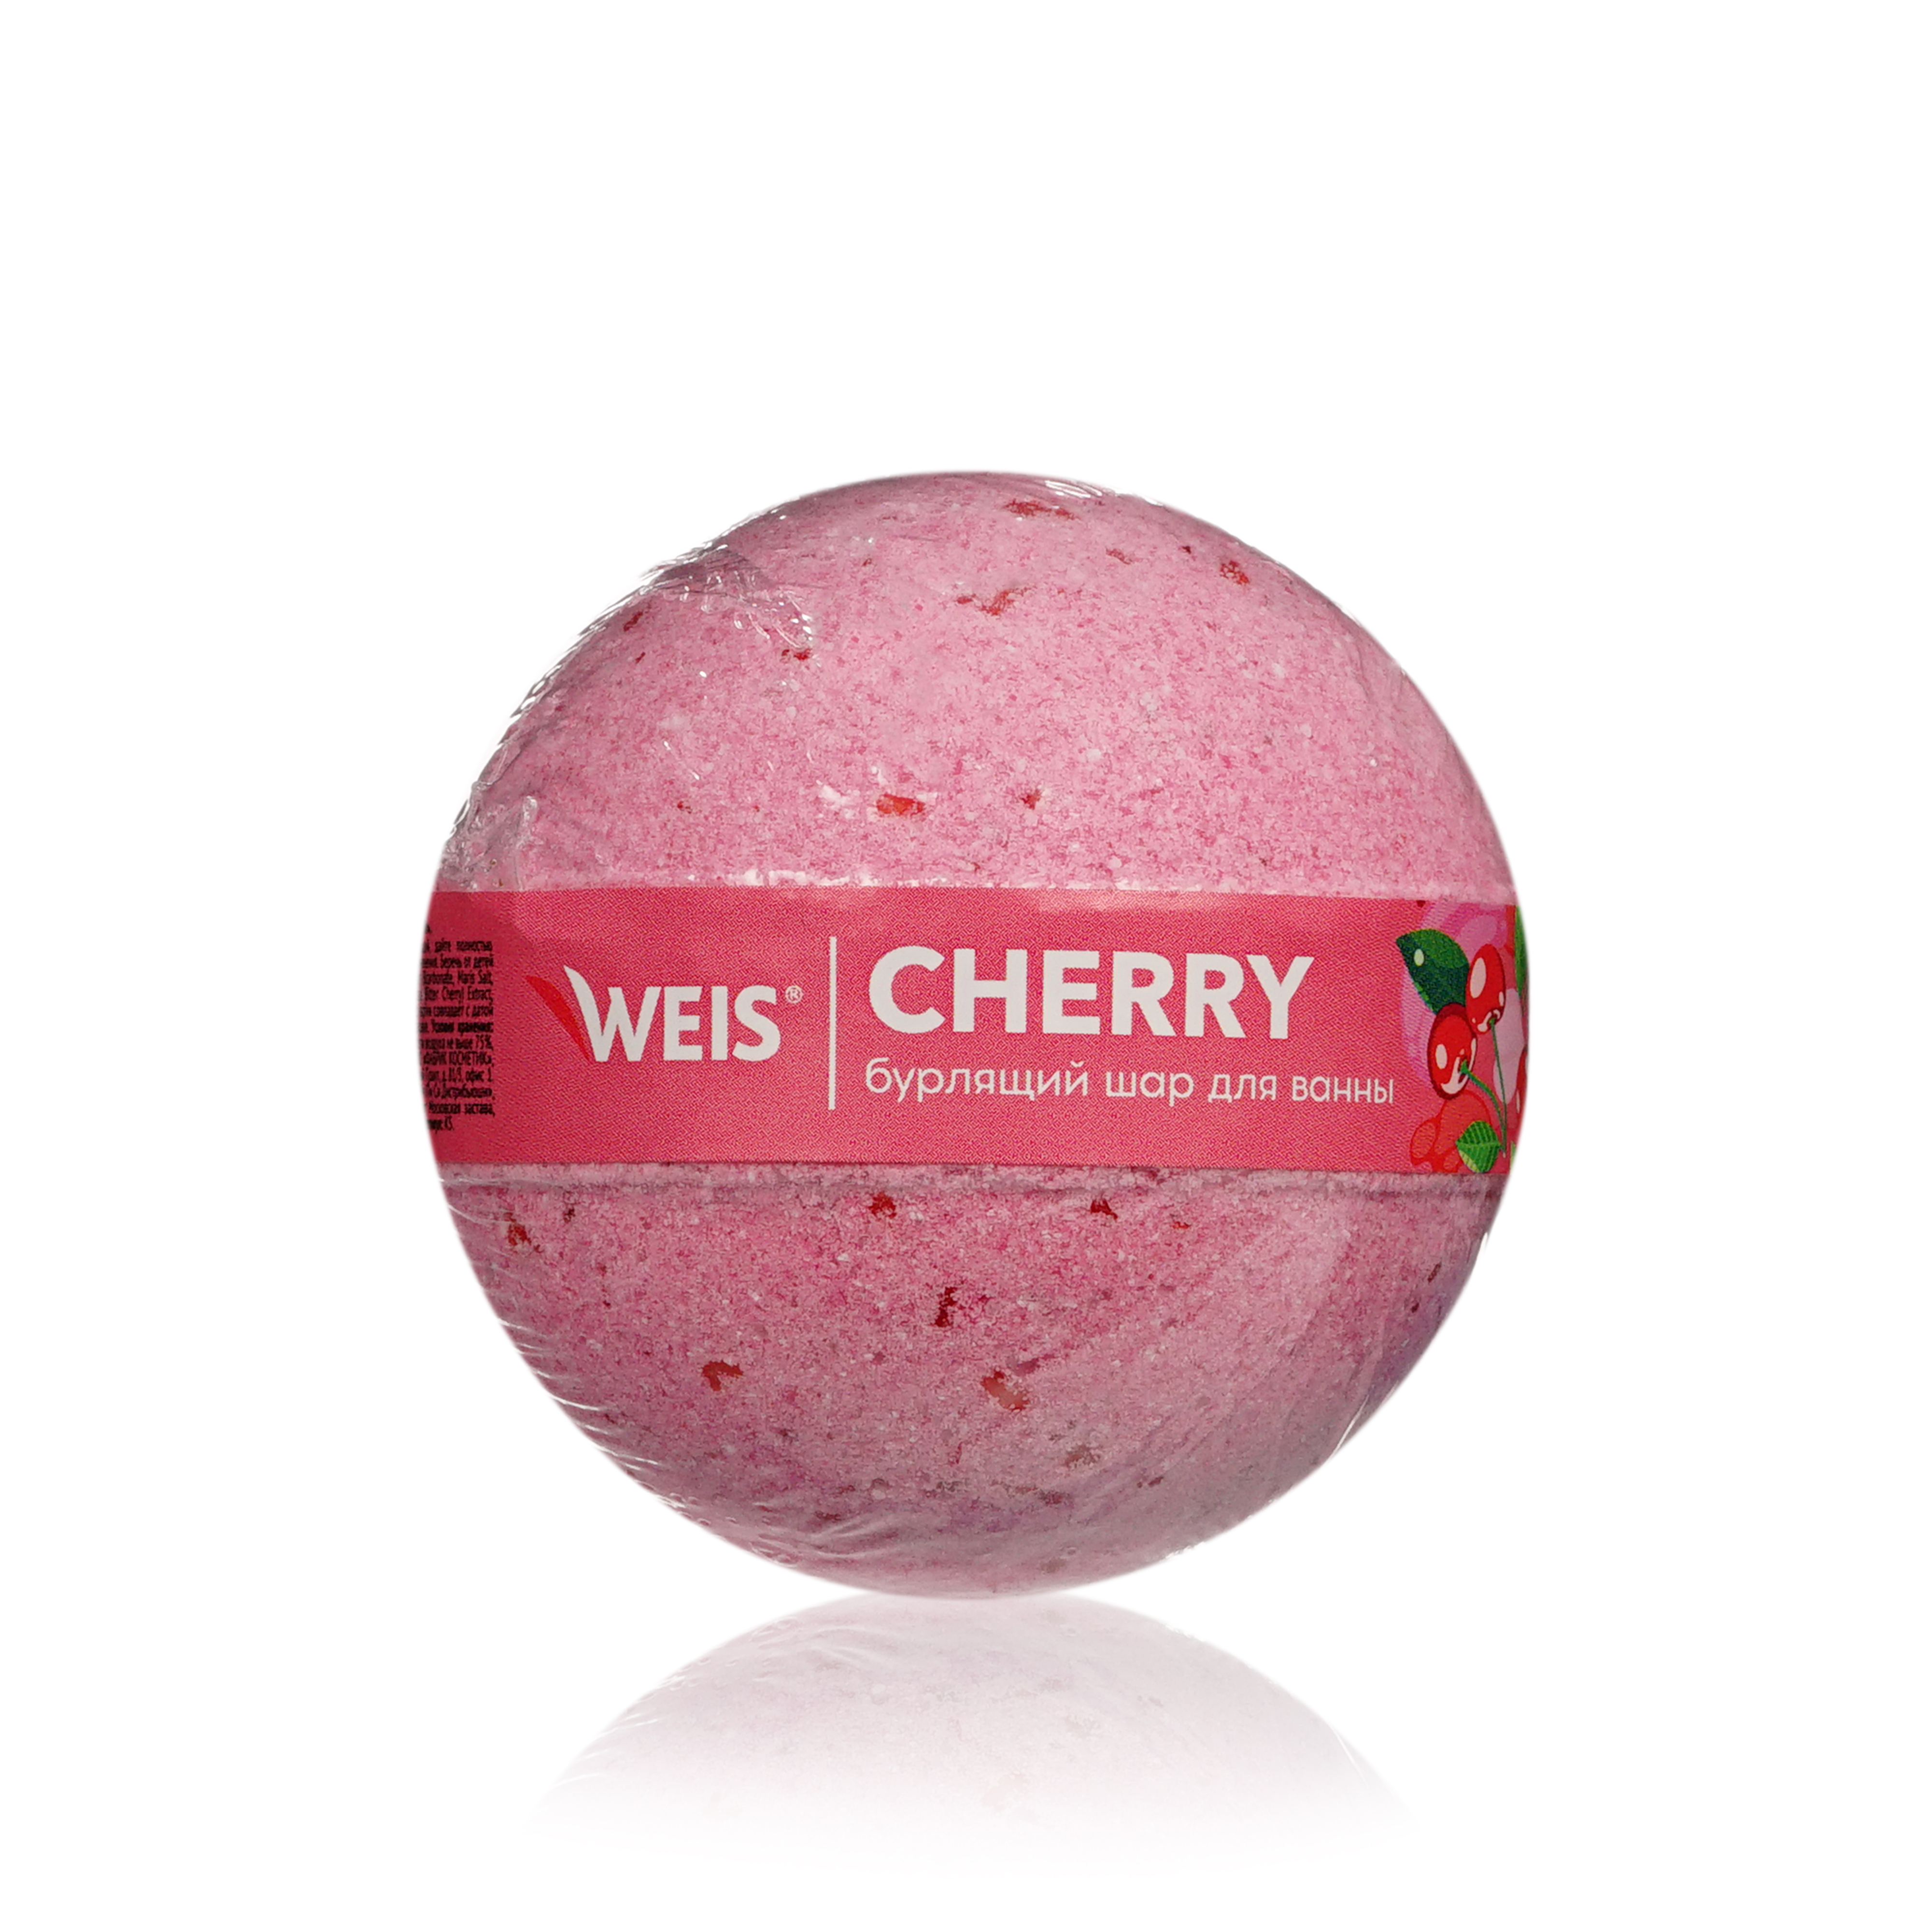 Бурлящий шар для ванны WEIS Cherry 160г